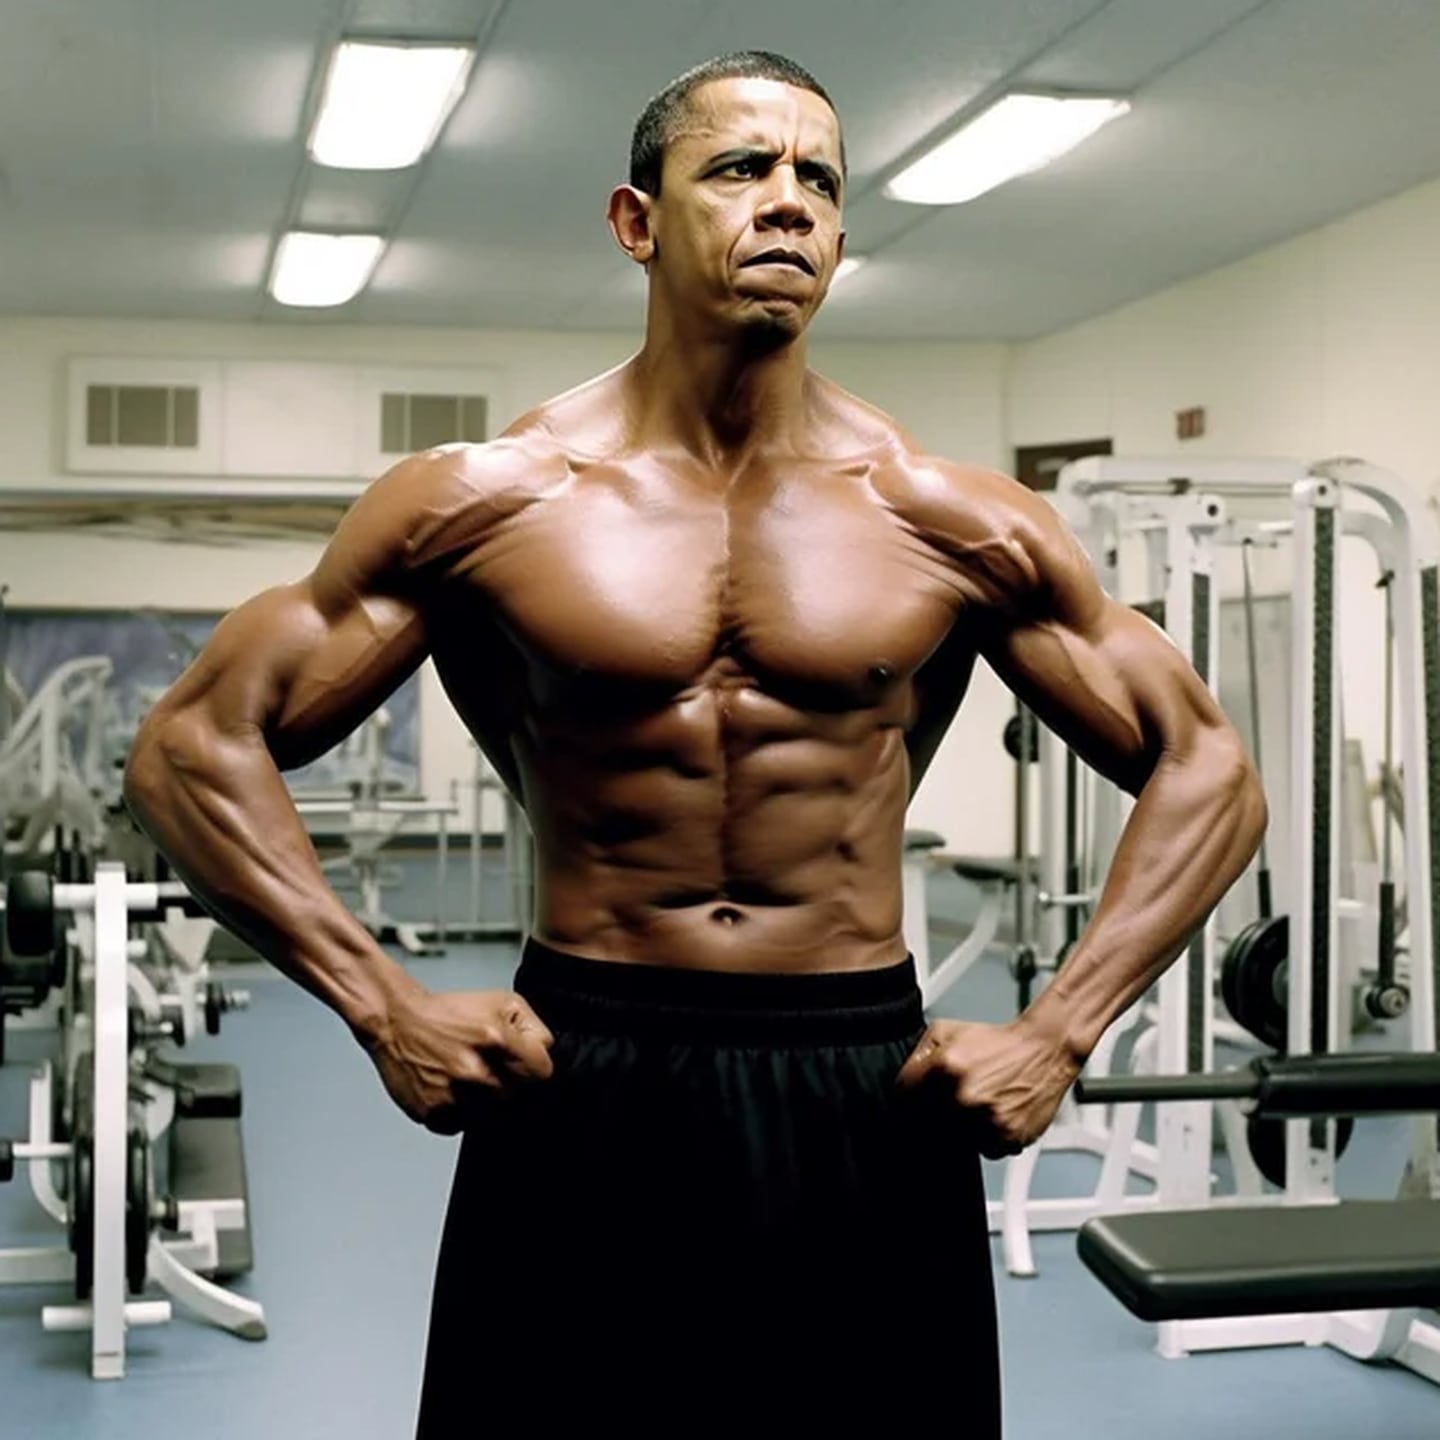 Barack Obama con cuerpo atlético, según la IA